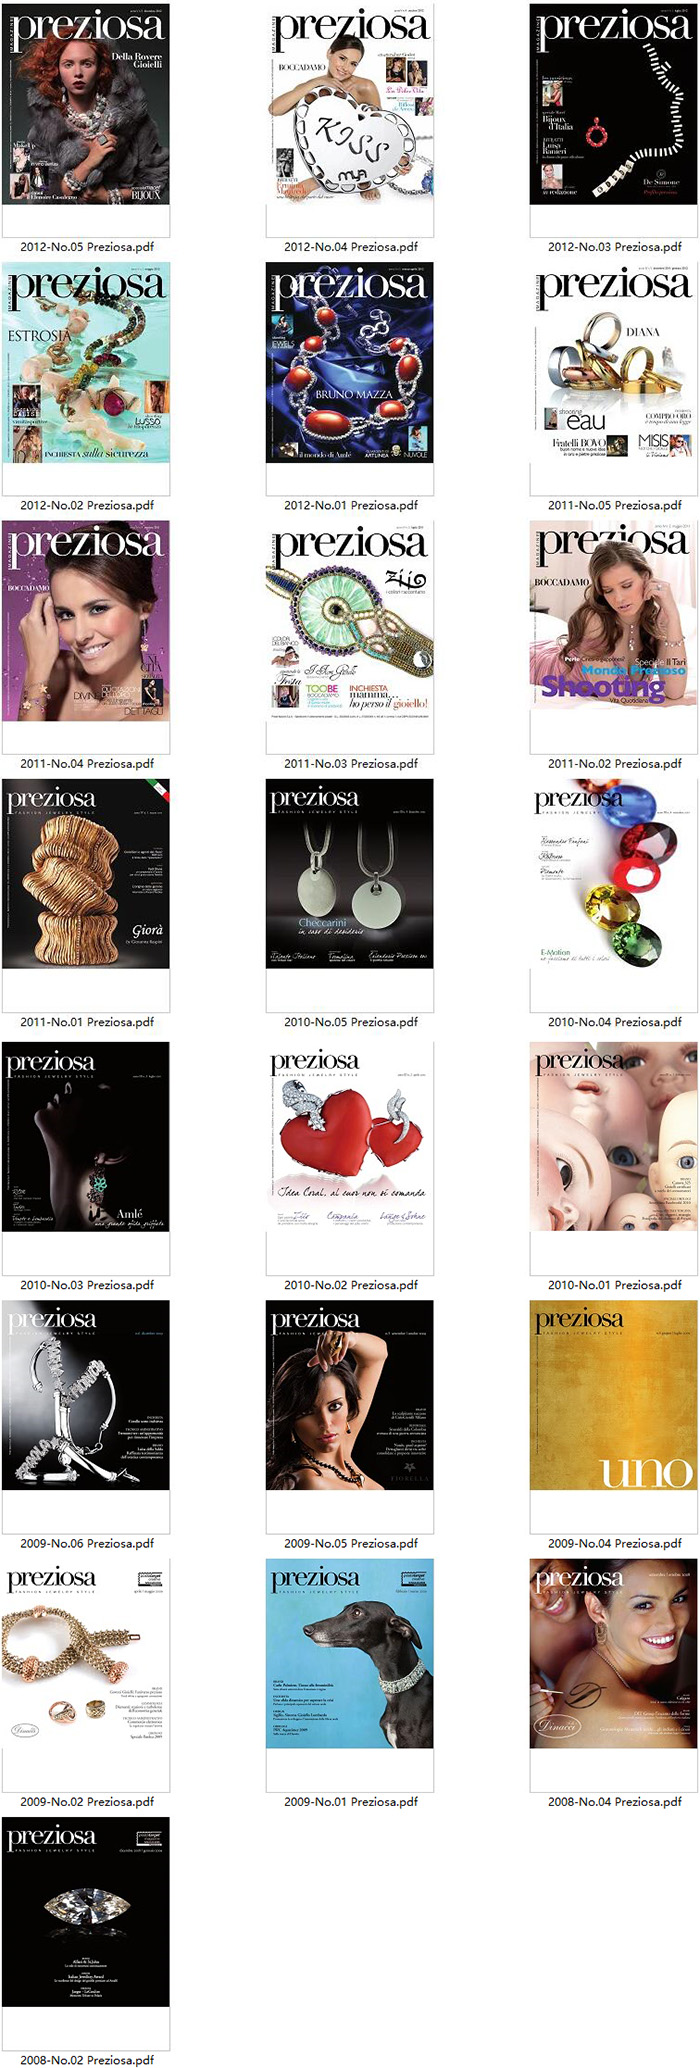 珠宝首饰时尚杂志订阅电子版PDF 意大利《Preziosa magazine》【2008-2012年汇总22期】